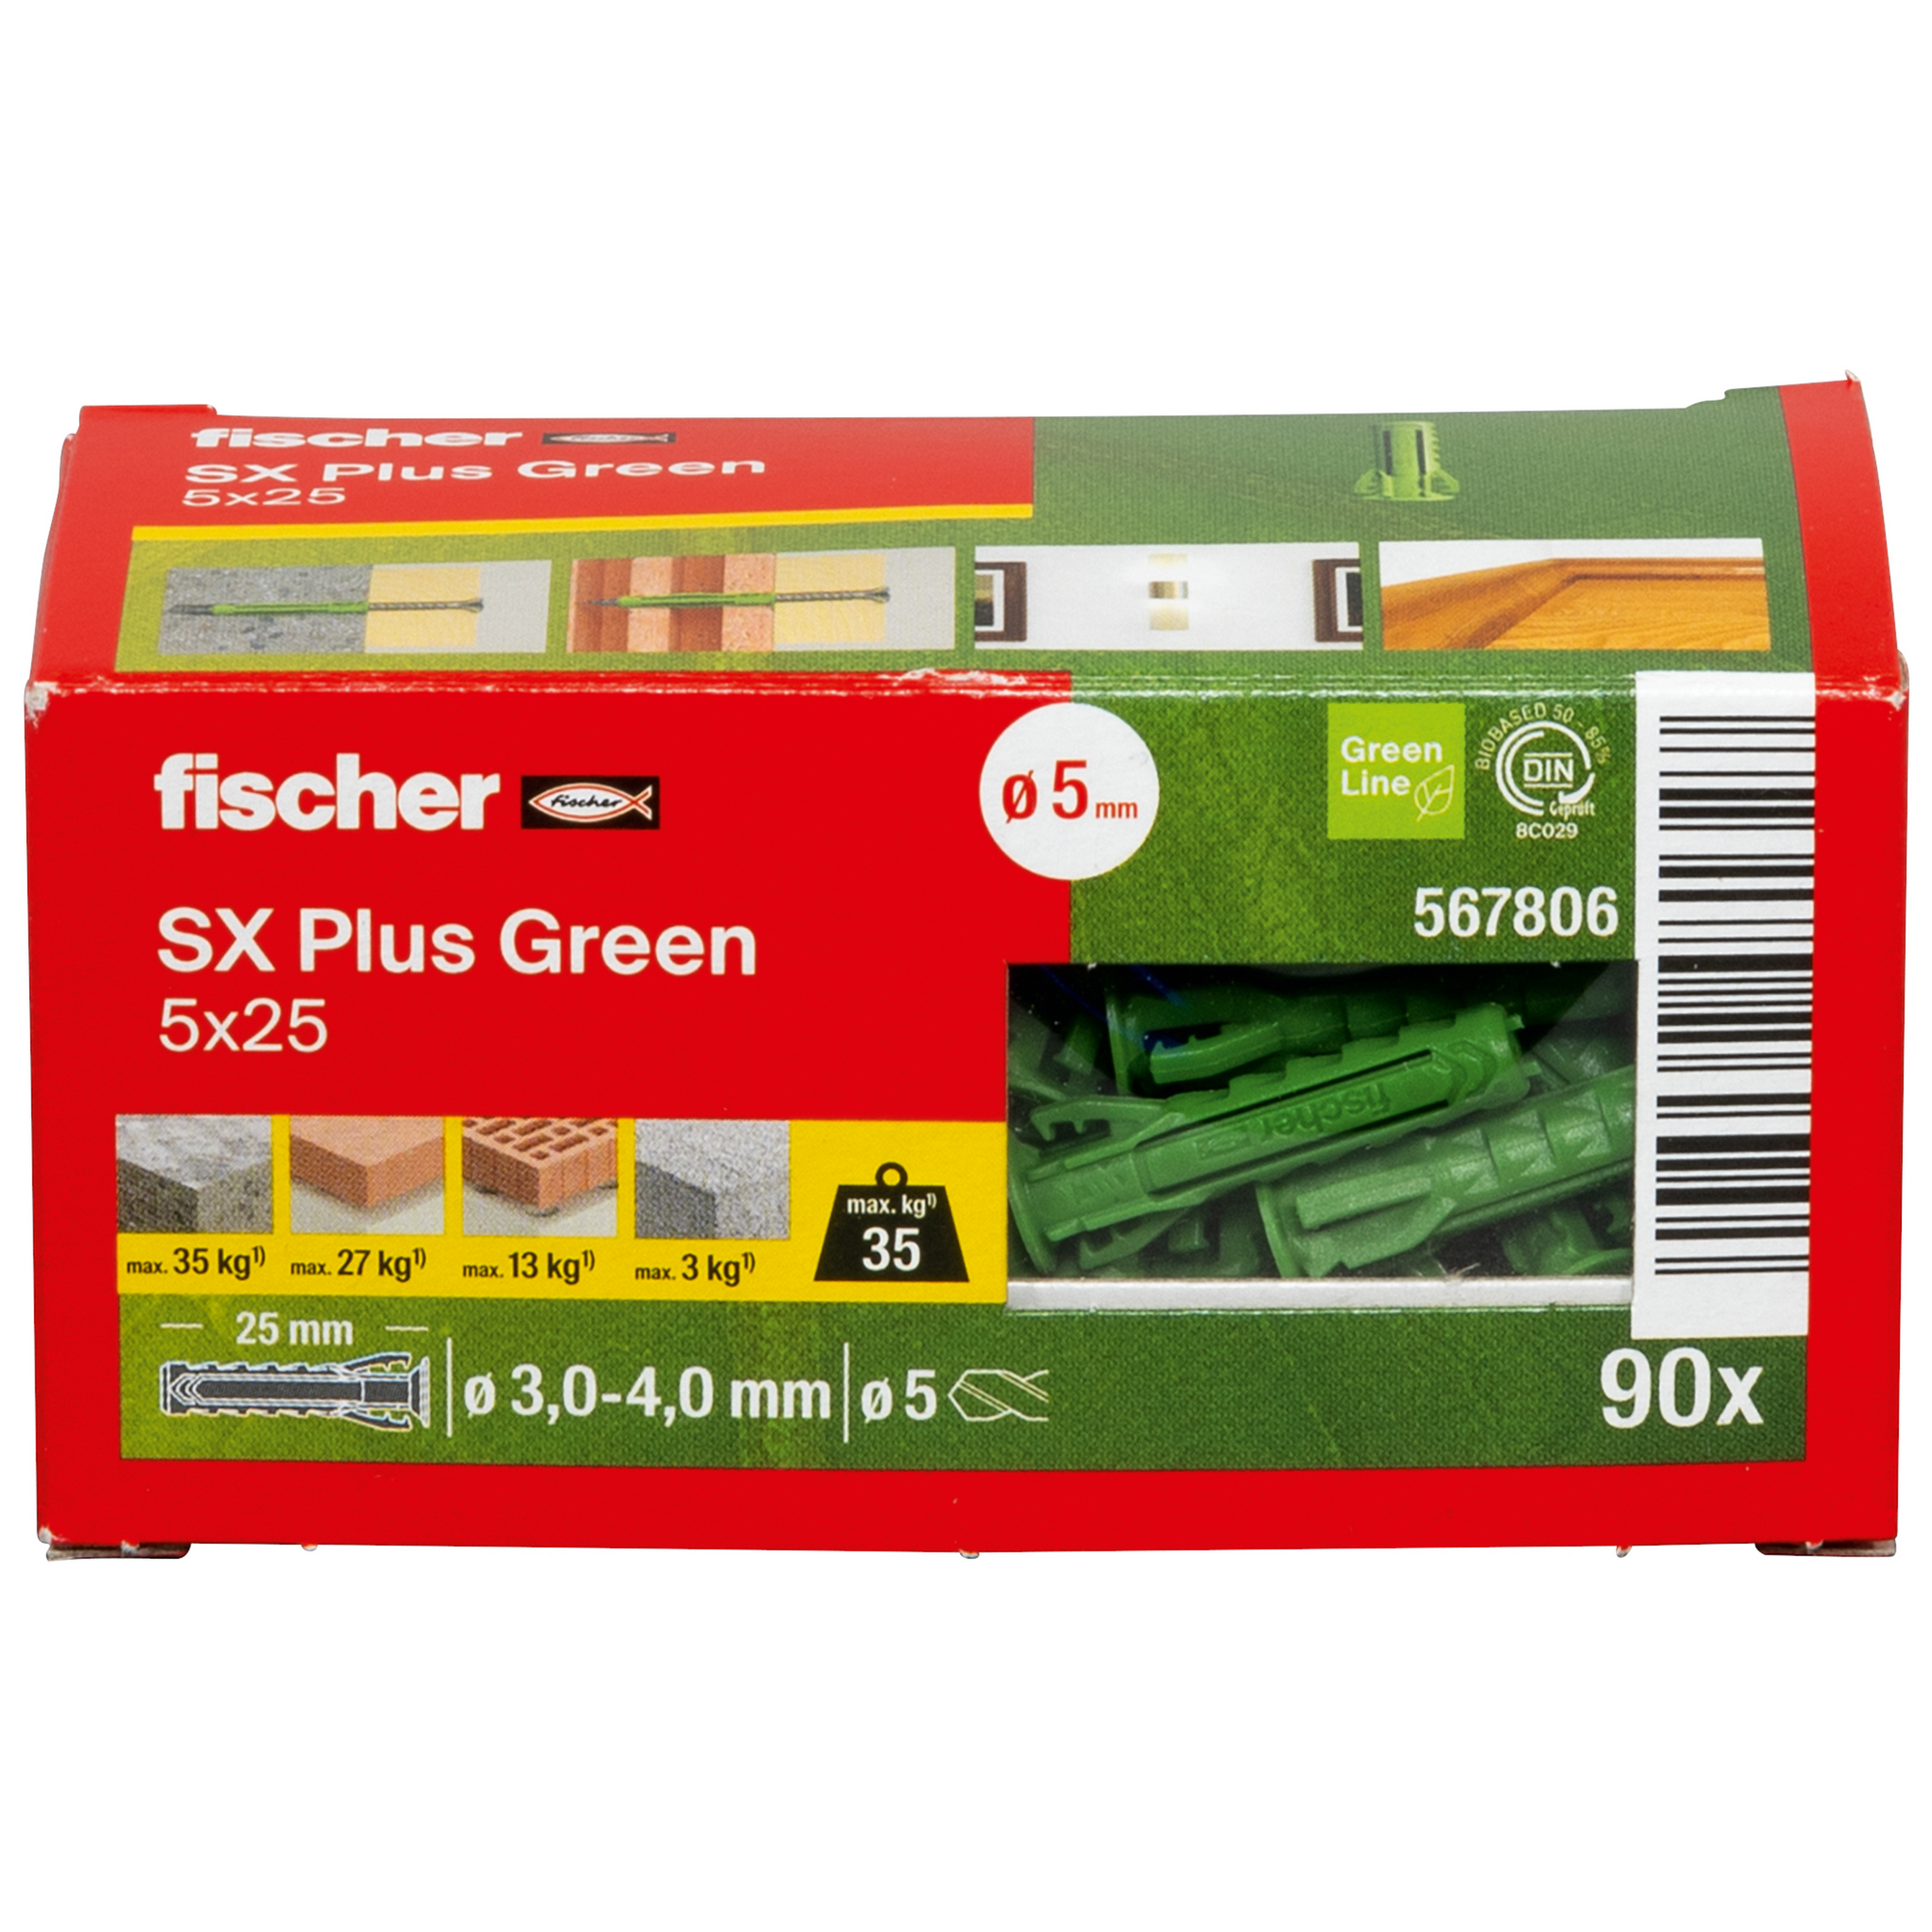 Spreizdübel-Set 'SX Plus Green' Ø 5 x 25 mm, 90-teilig + product picture